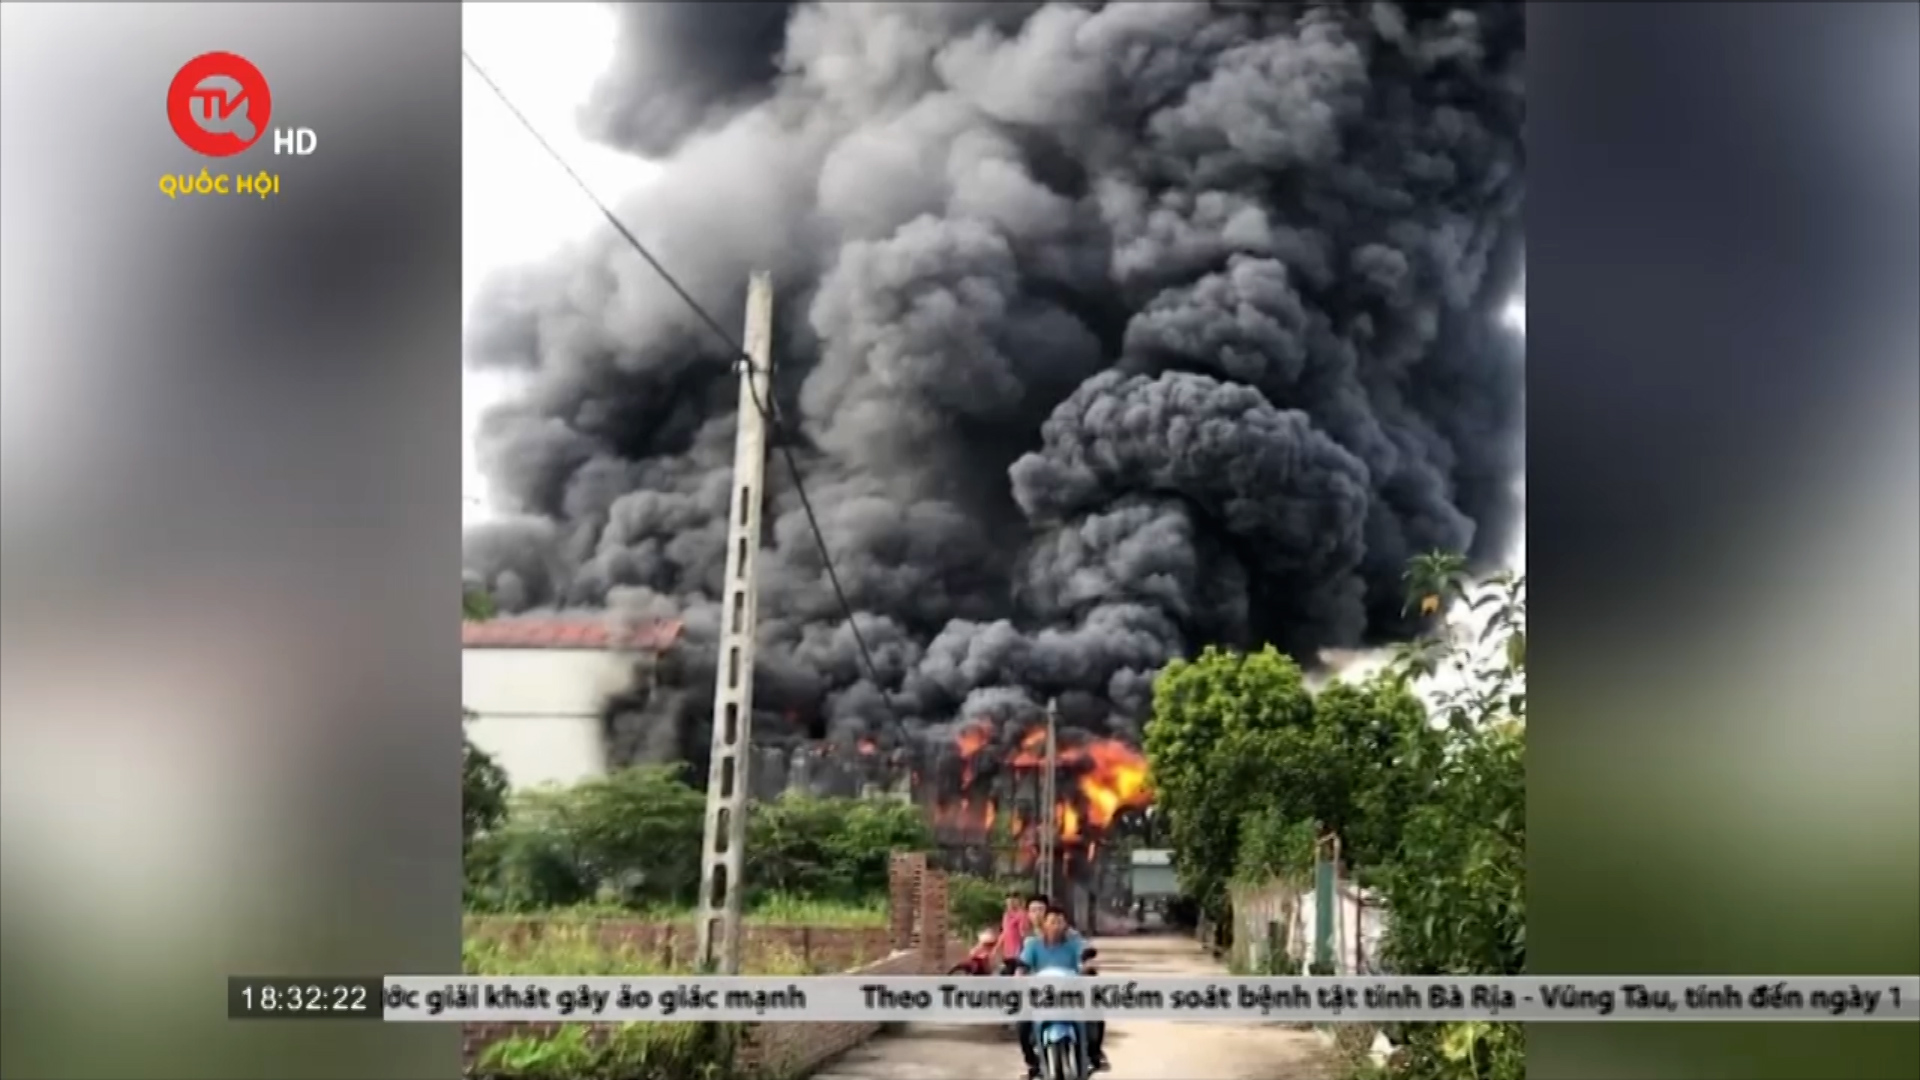 Hà Nội: Xác định nguyên nhân ban đầu vụ cháy kho chăn ga, gối, đệm tại Thanh Oai khiến 3 mẹ con tử vong